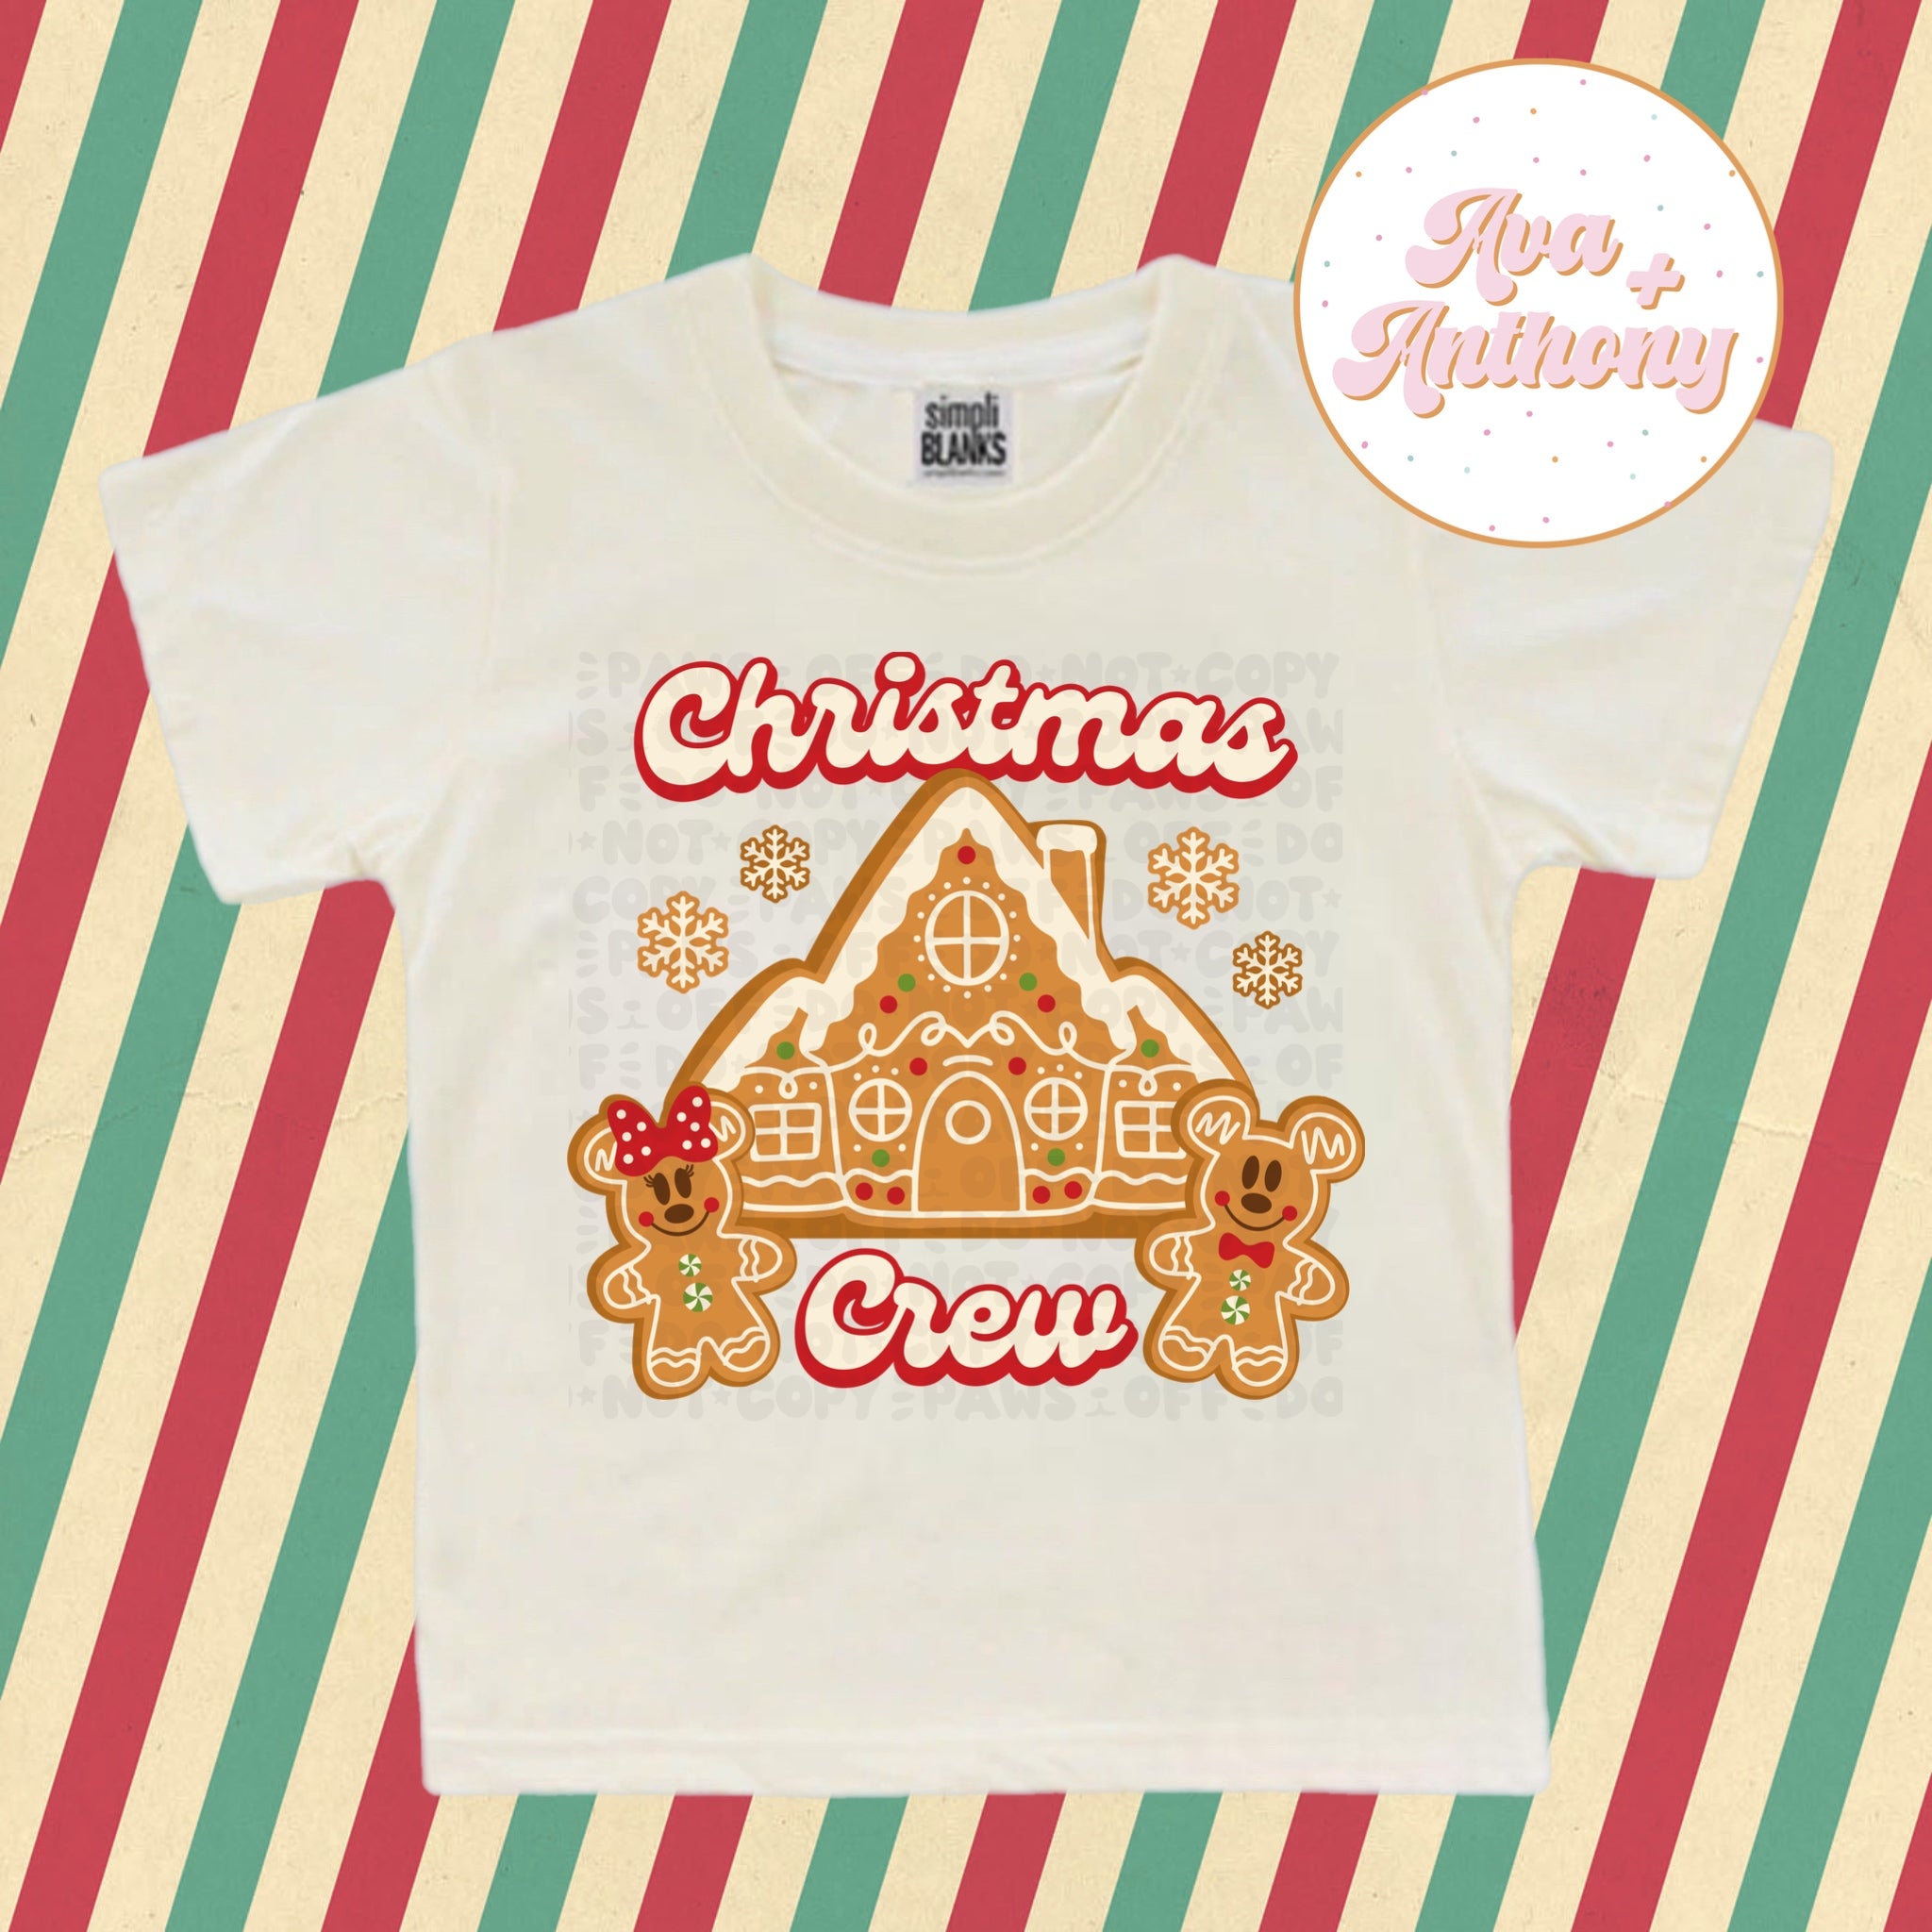 Christmas Crew t-shirt